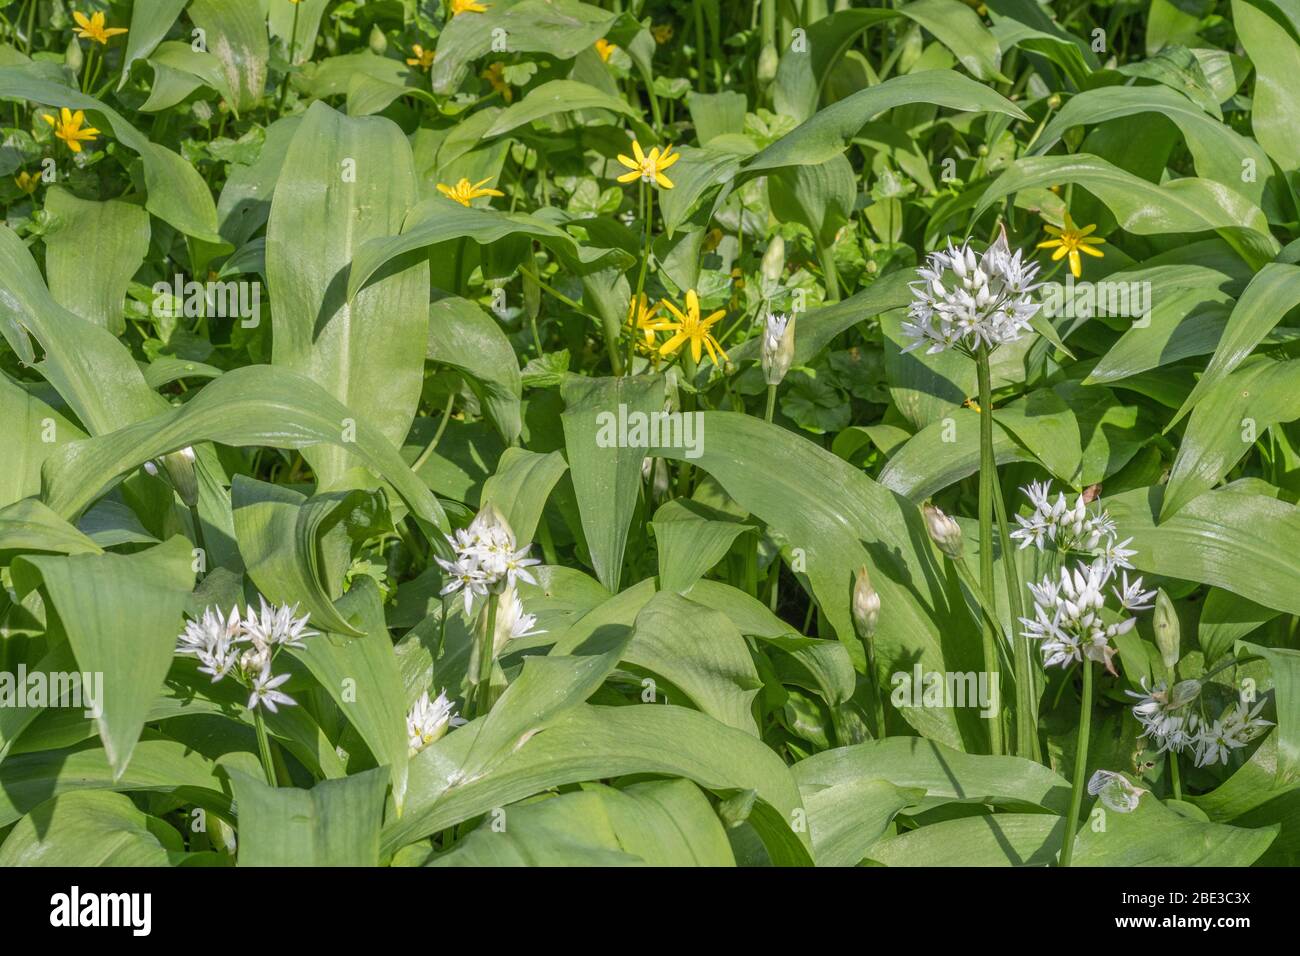 Weiße Blüten von Ramsons, wilder Knoblauch / Allium ursinum, & gelbe Blüten von Lesser Celandine / Ranunculs ficaria / Ficaria verna eine Heilpflanze. Stockfoto